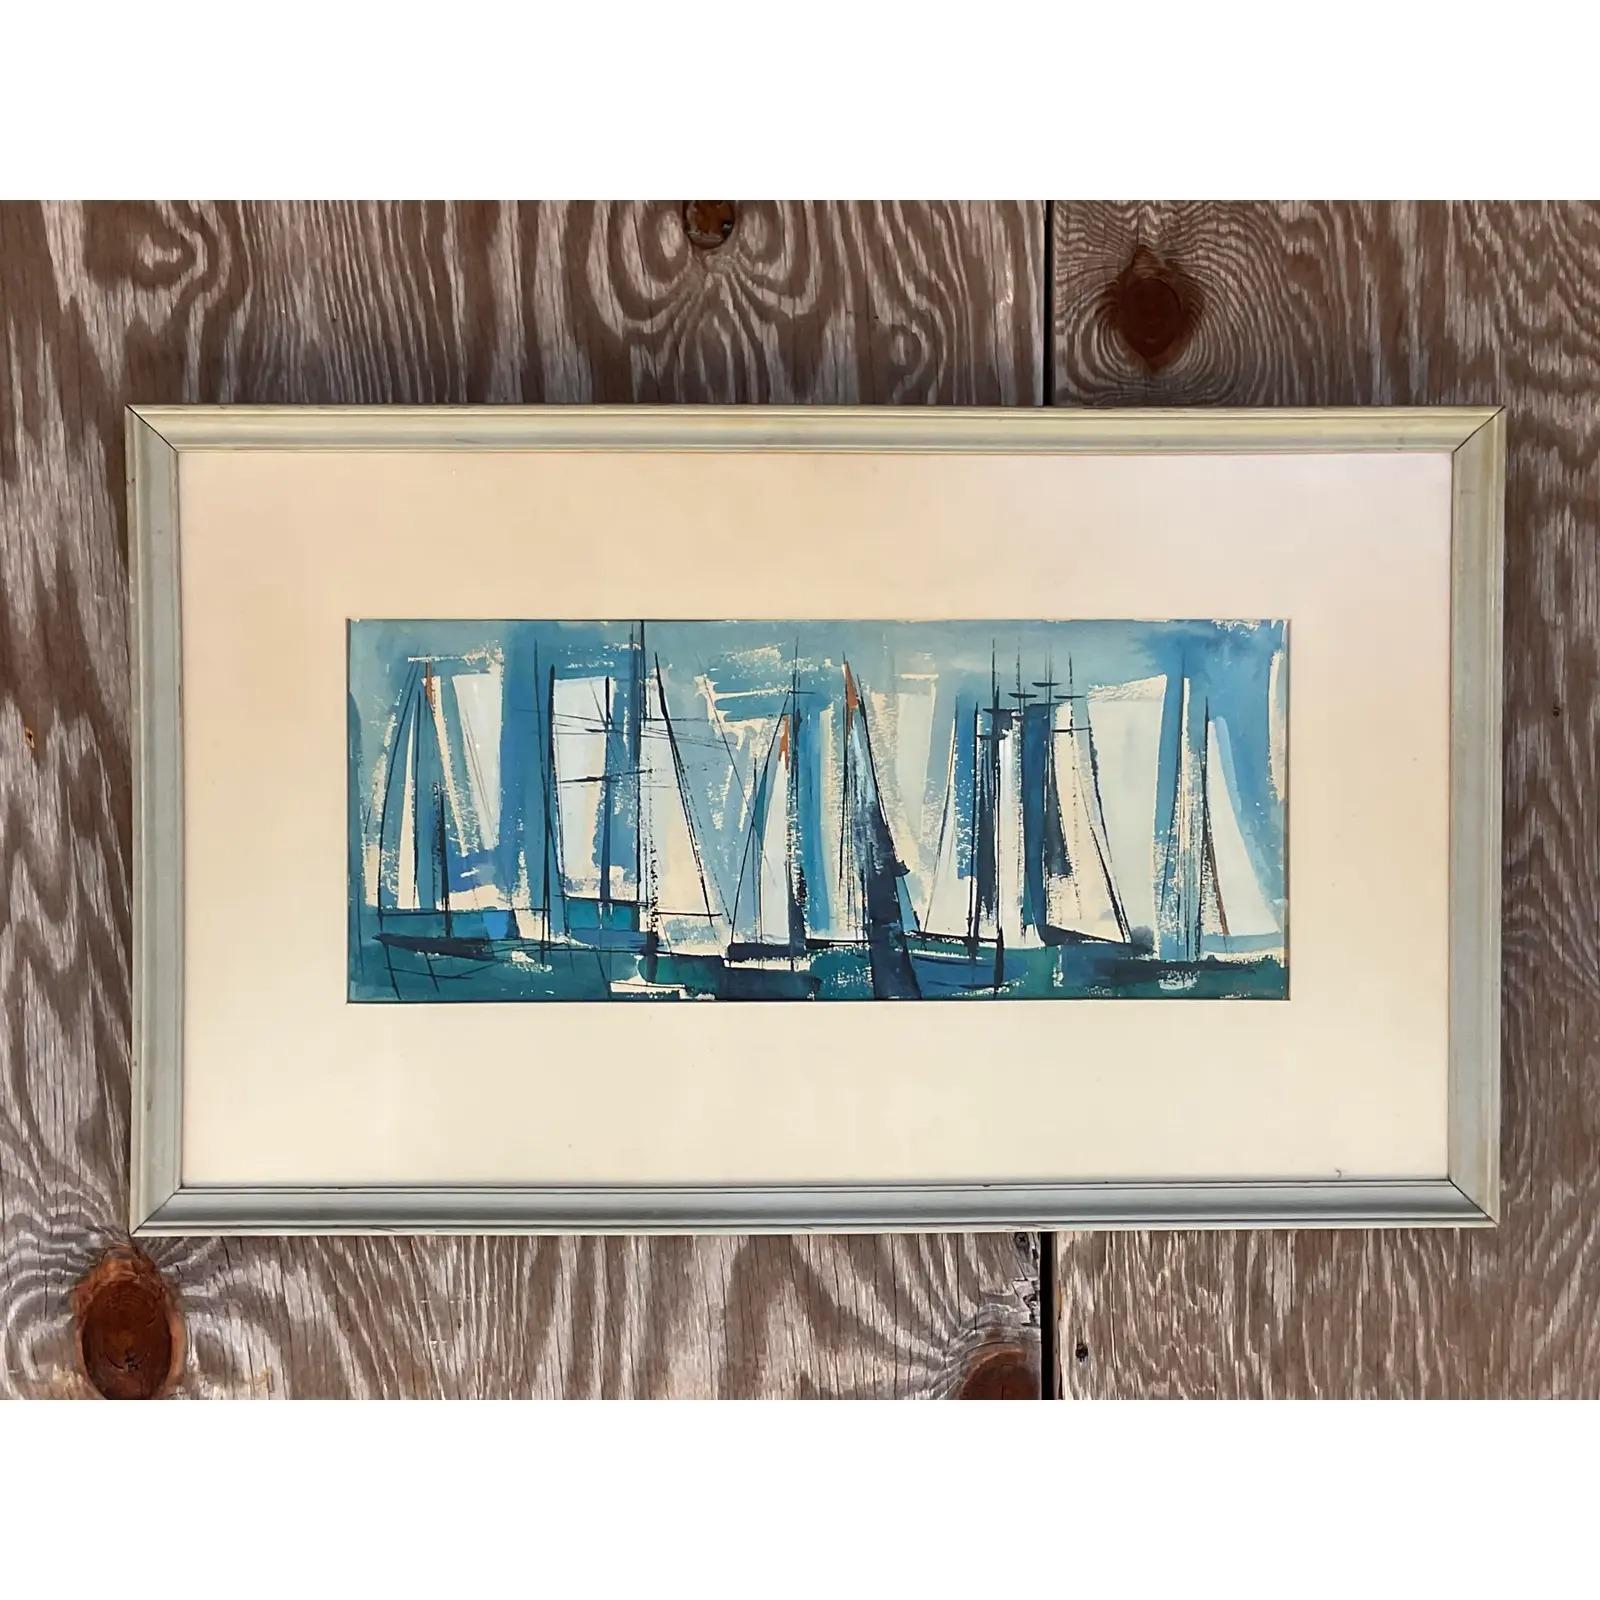 Ein fantastisches Vintage-Aquarell der Küste. Eine schöne abstrakte Komposition von Segelbooten in hellen klaren Farben. Unterschrieben. Erworben aus einem Nachlass in Palm Beach.